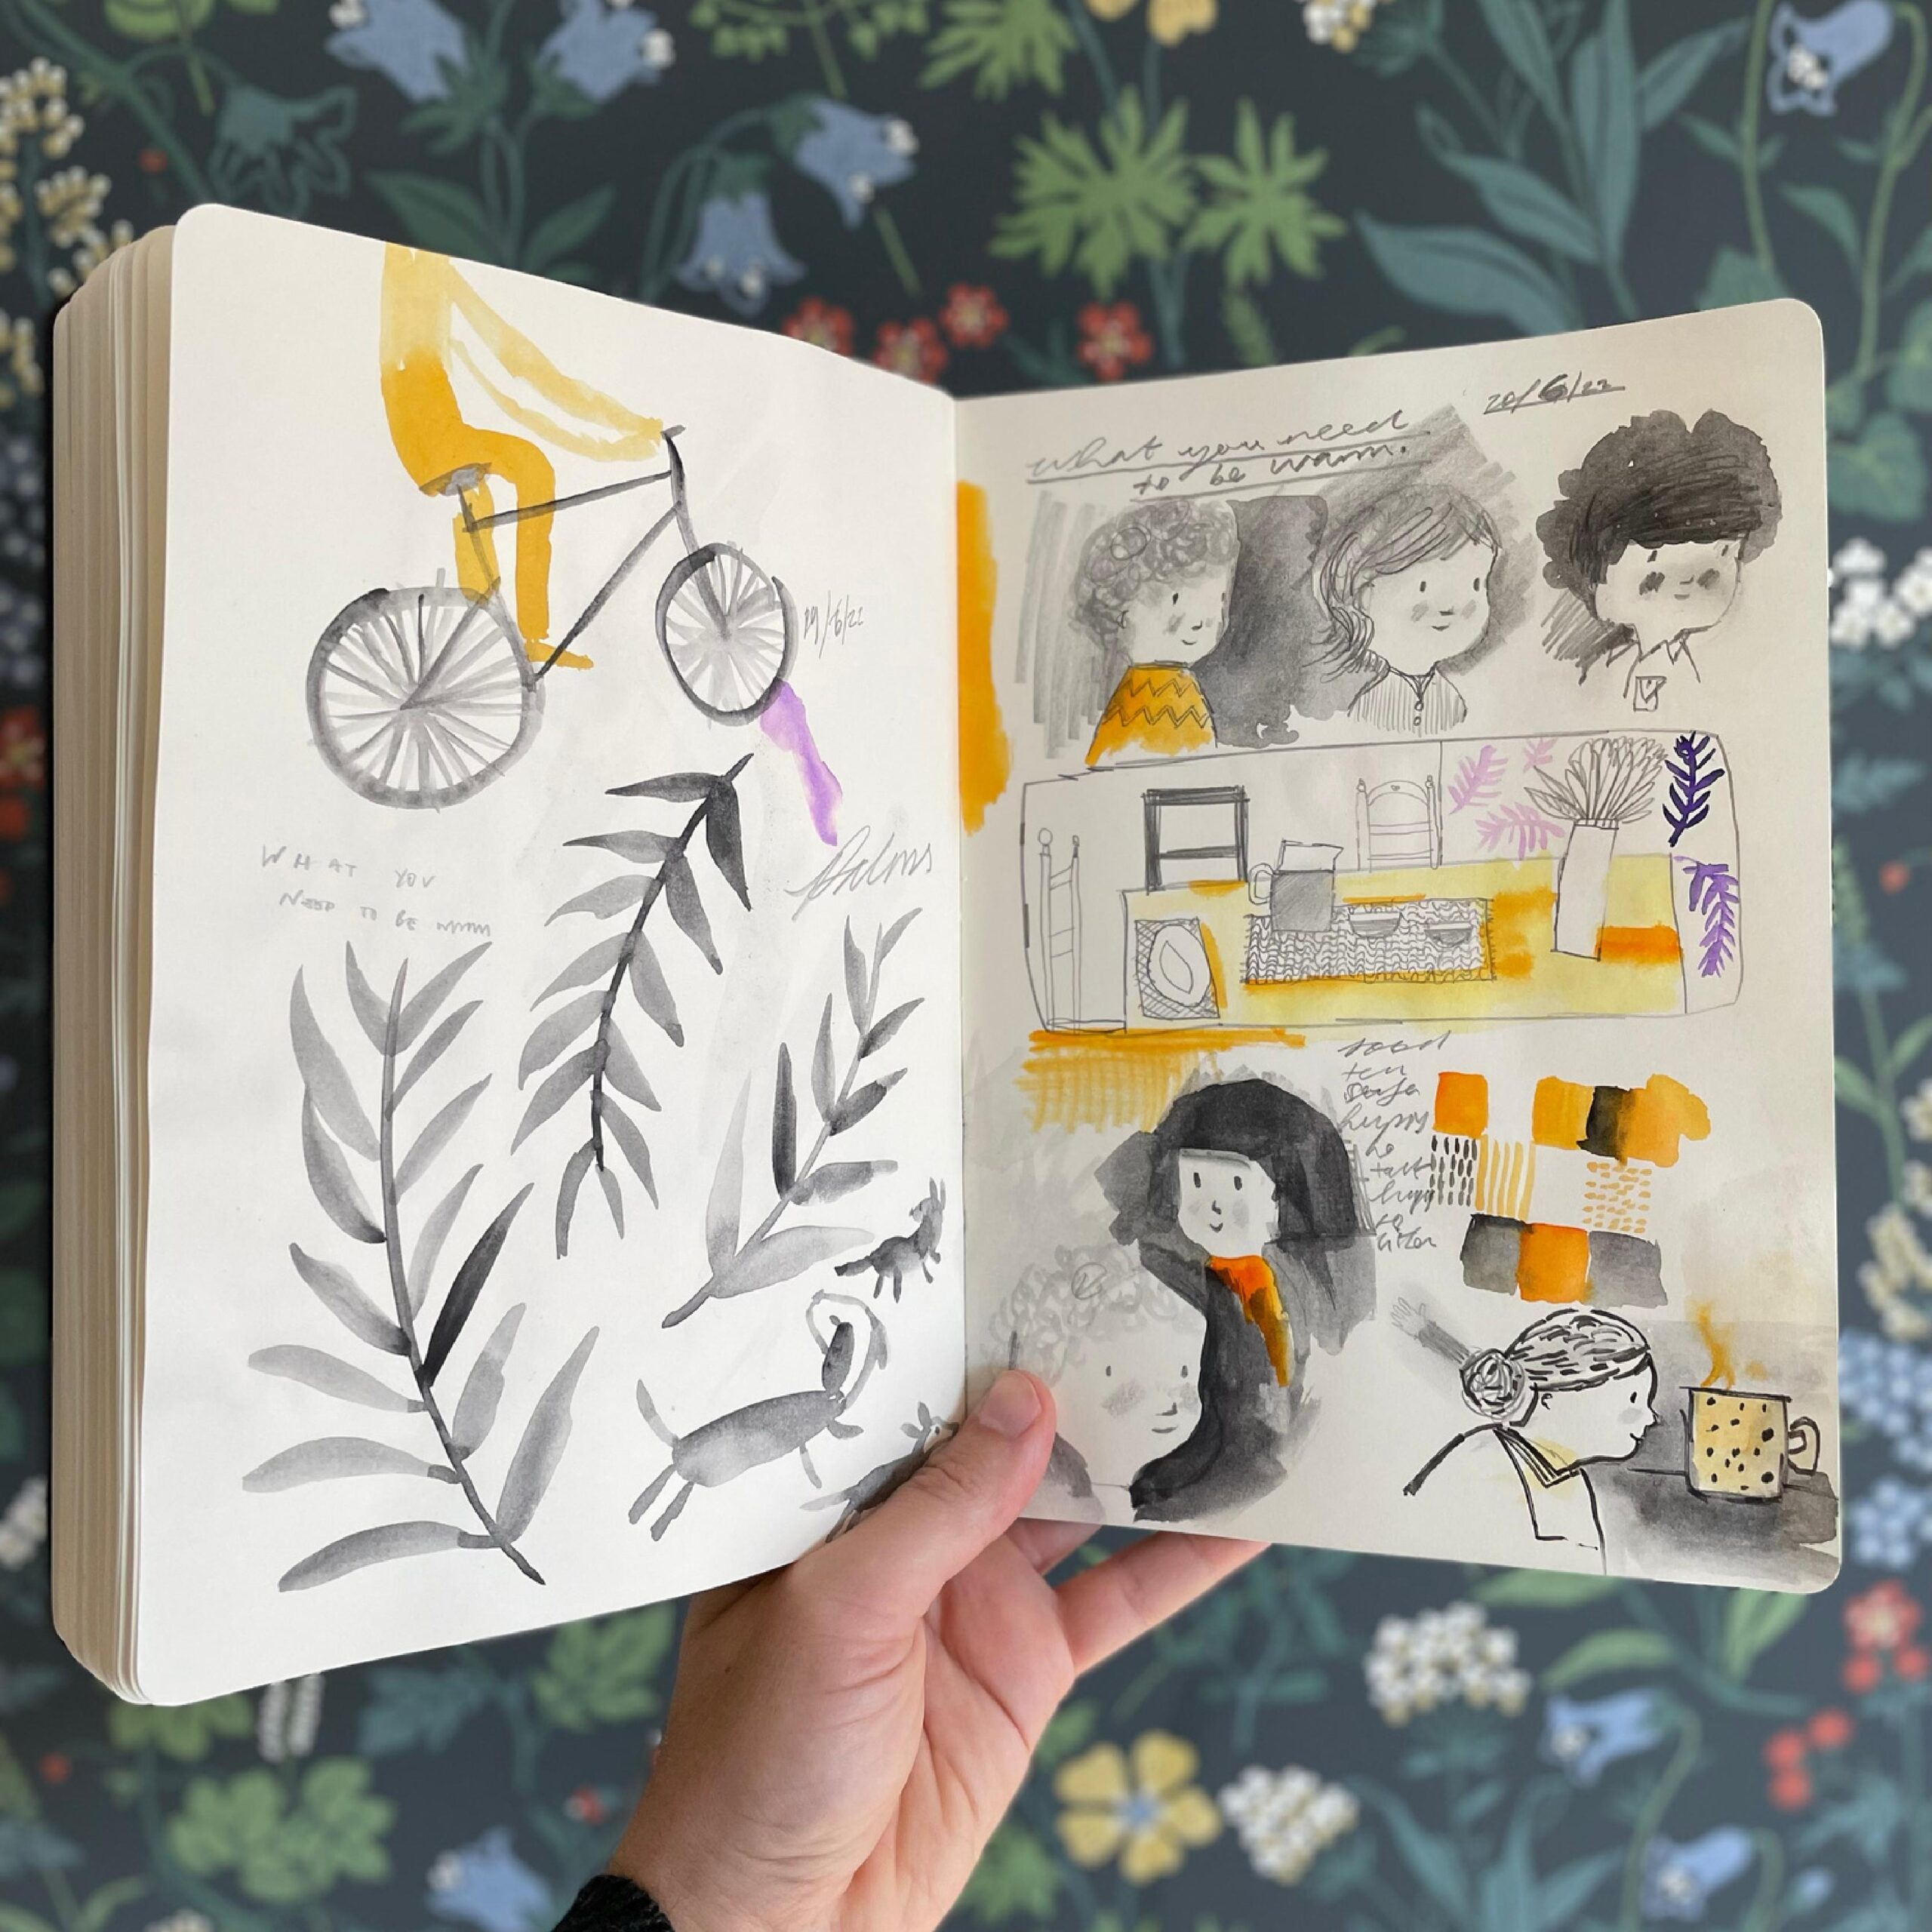 Livro Do que você precisa para se aquecer, escrito por Neil Gaiman, é ilustrado por treze artistas